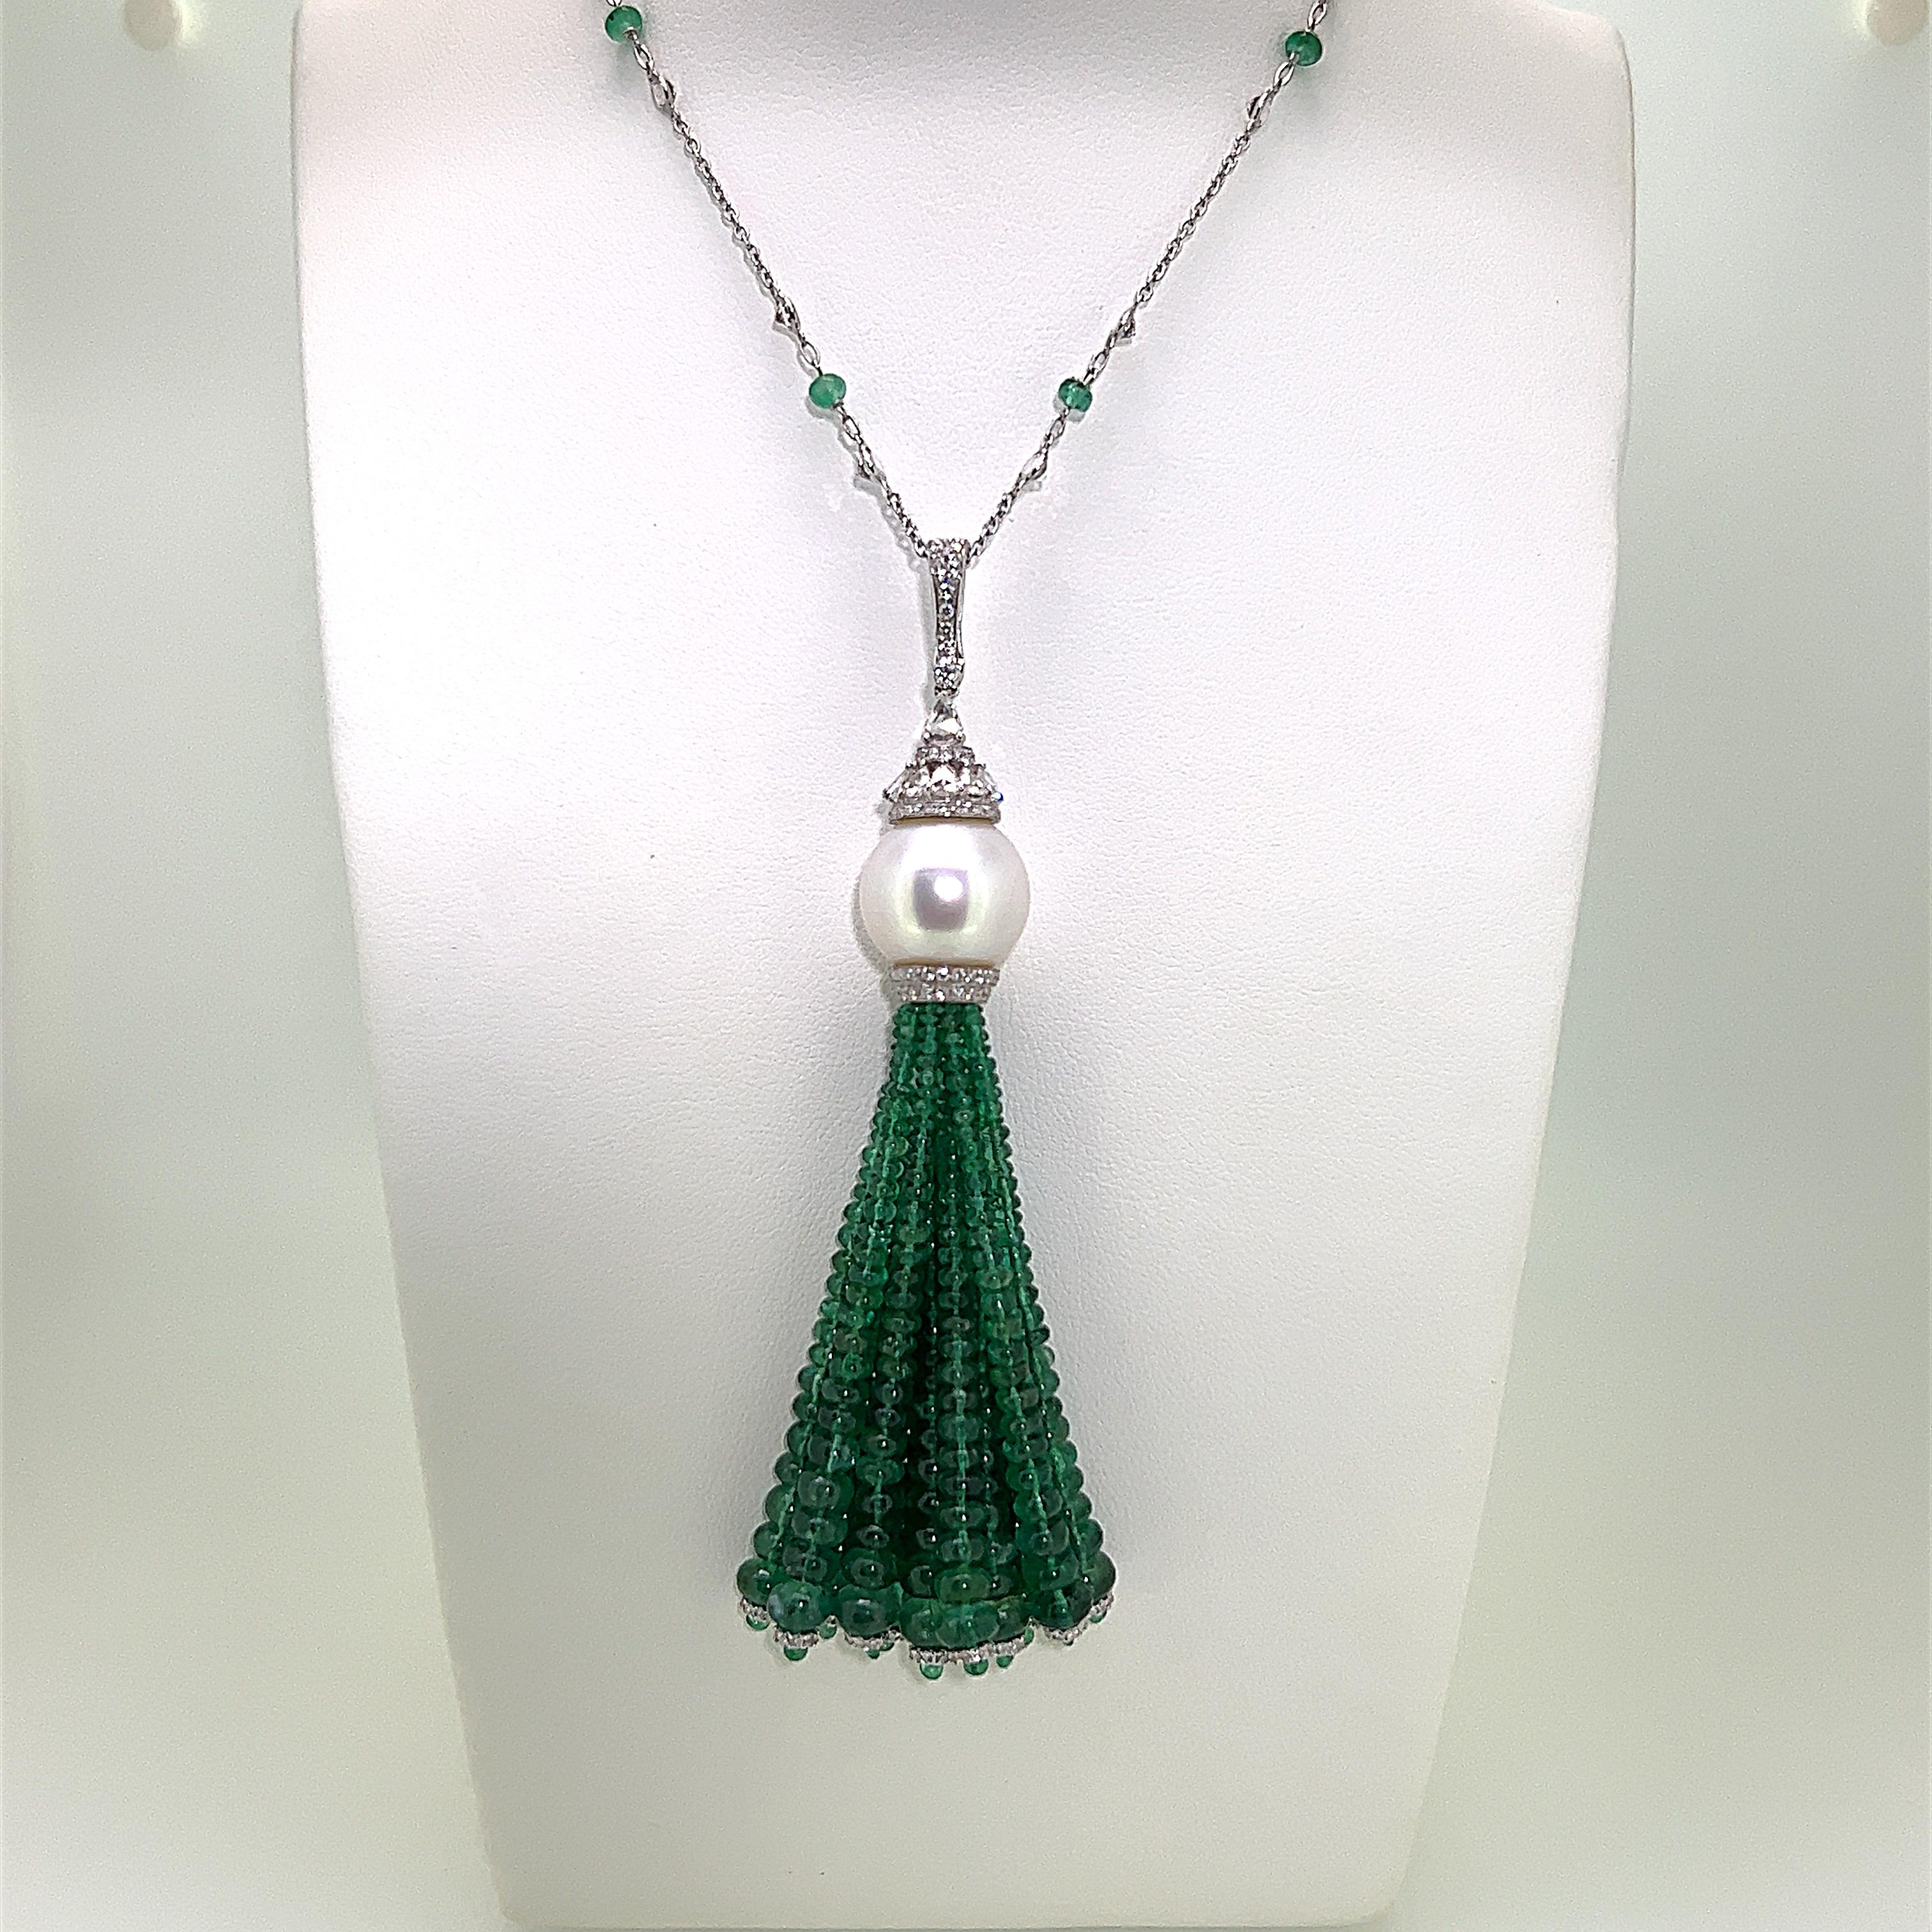 Il s'agit d'un magnifique collier à pompon en émeraude, perle de culture et diamant pesant 79.84 carats au total.  Cette pièce remarquable présente des perles d'émeraude scintillantes avec des tailles et des diamants de différentes tailles, serties